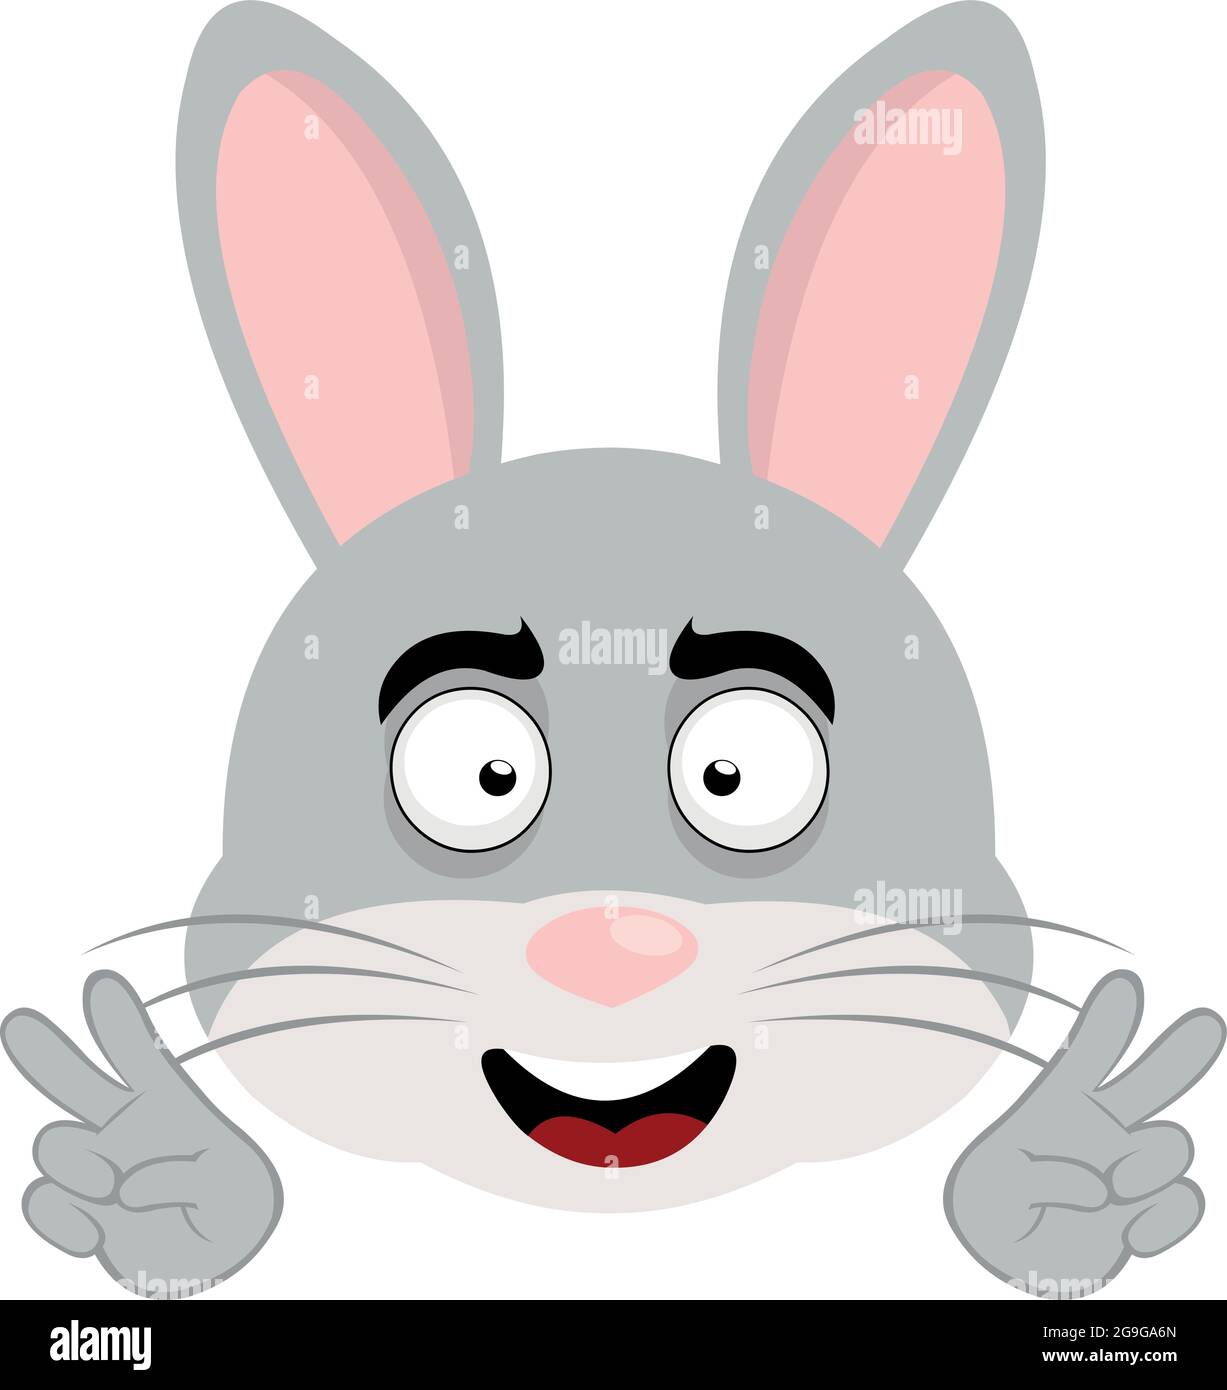 Vektor-Illustration der Emoticon des Gesichts eines Cartoon-Kaninchen macht eine Geste mit seinen Händen des Symbols für Frieden und Liebe oder V Sieg Stock Vektor